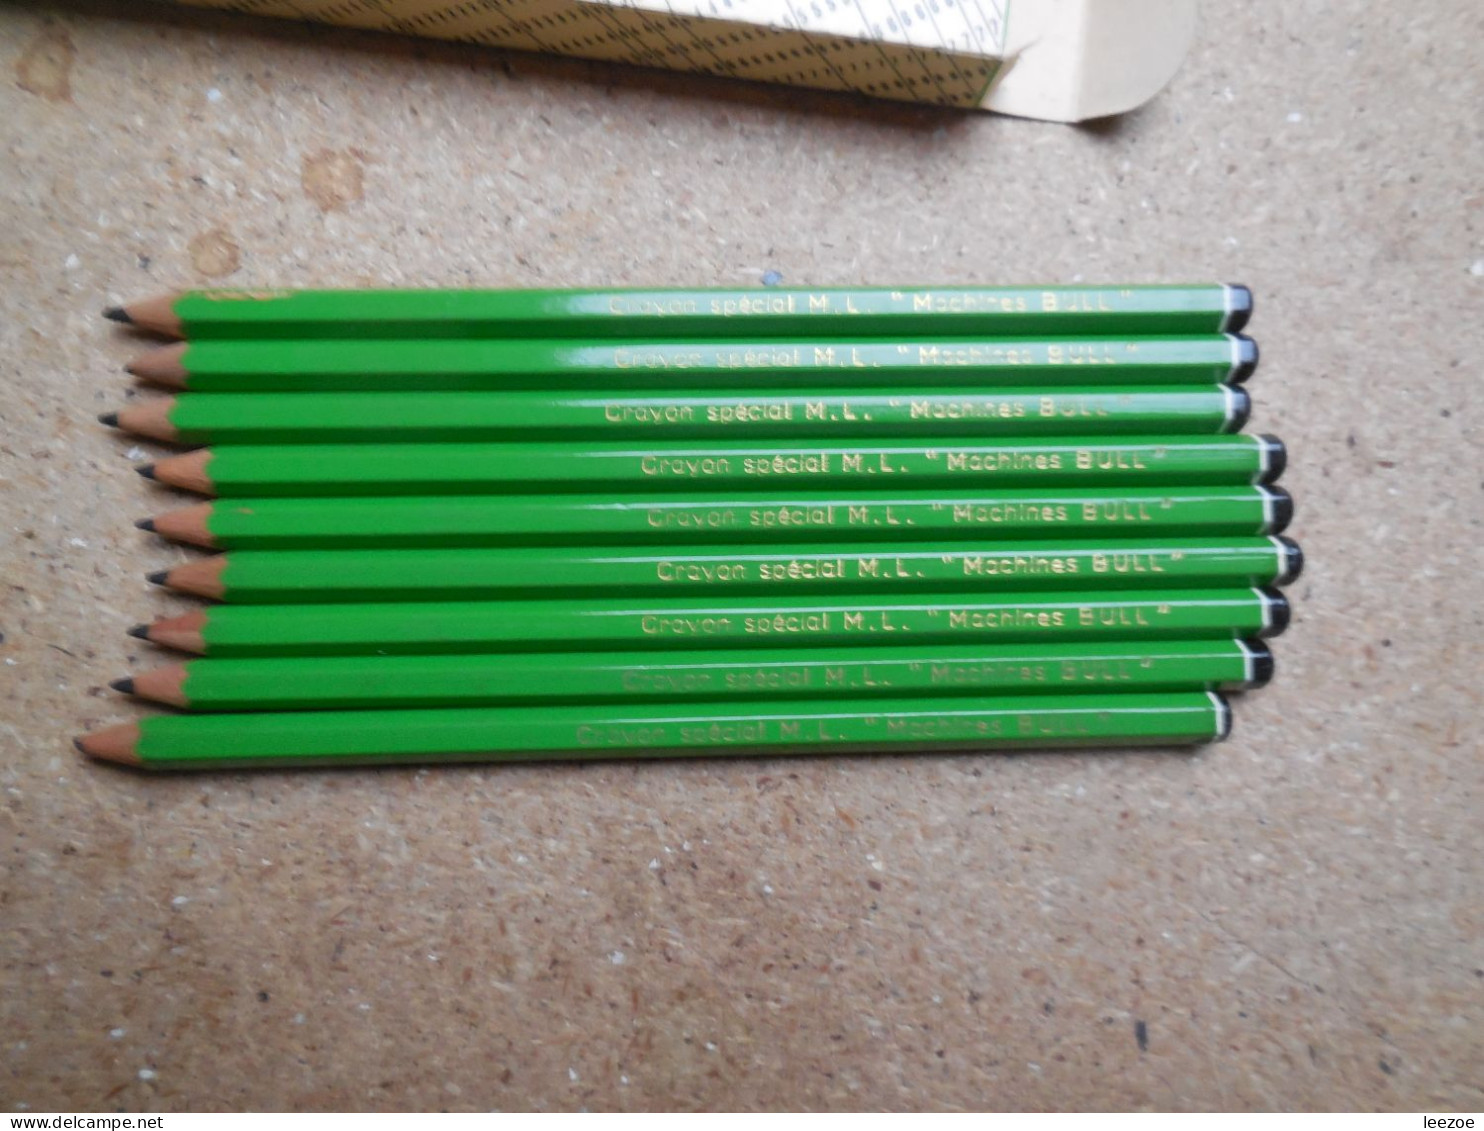 Boite de crayons BAIGNOL ET FARJON avec crayons SPECIAL M.L pour machine  BULL N°231........N5